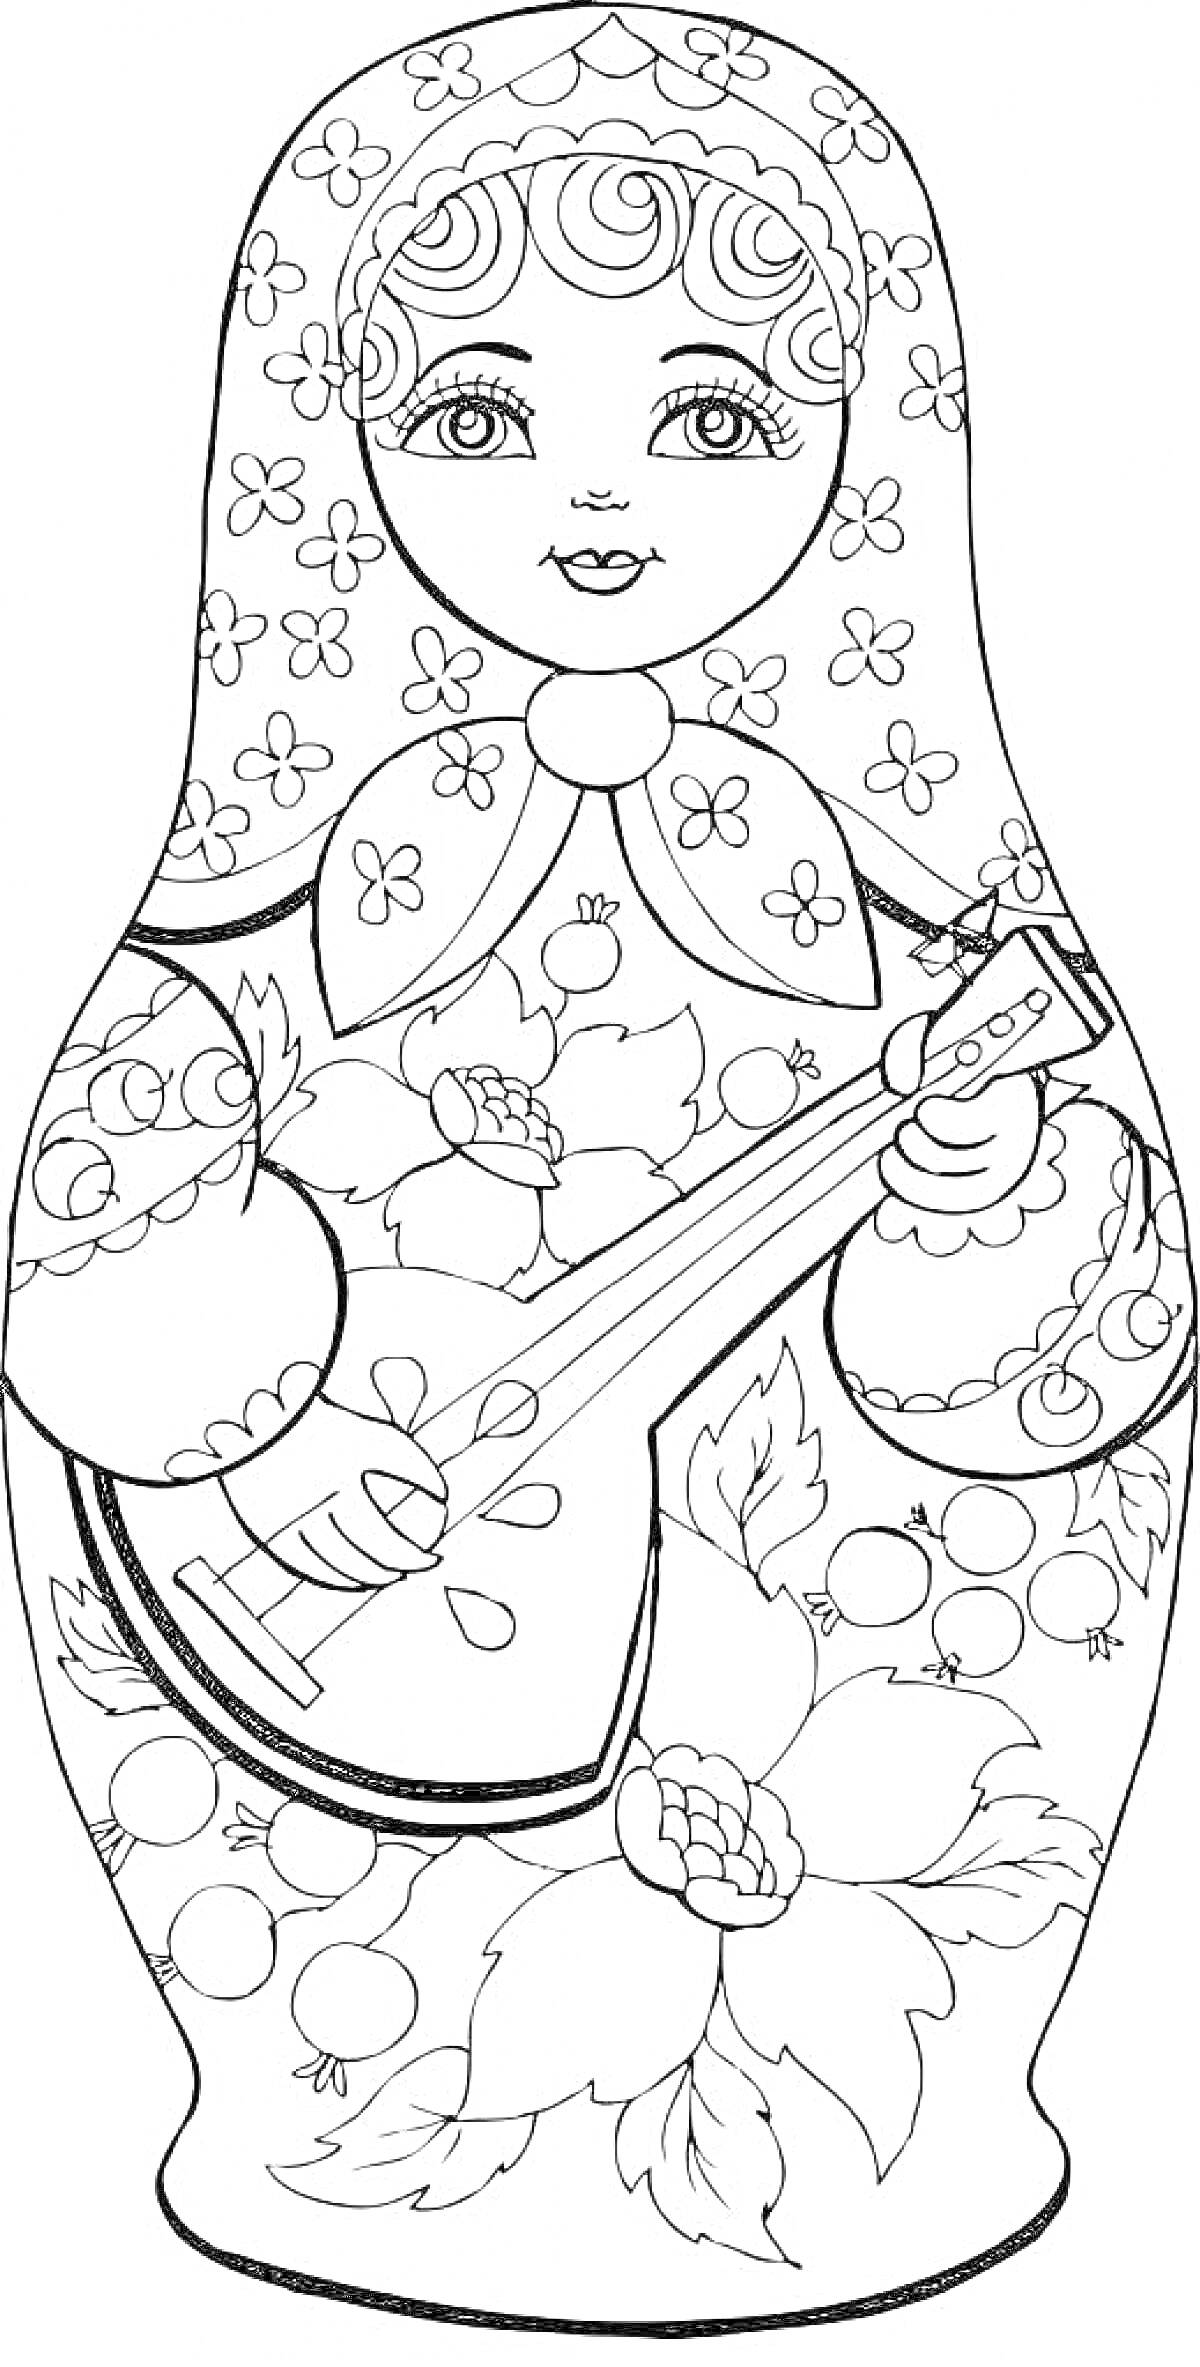 Раскраска Матрешка с цветочным узором и балалайкой